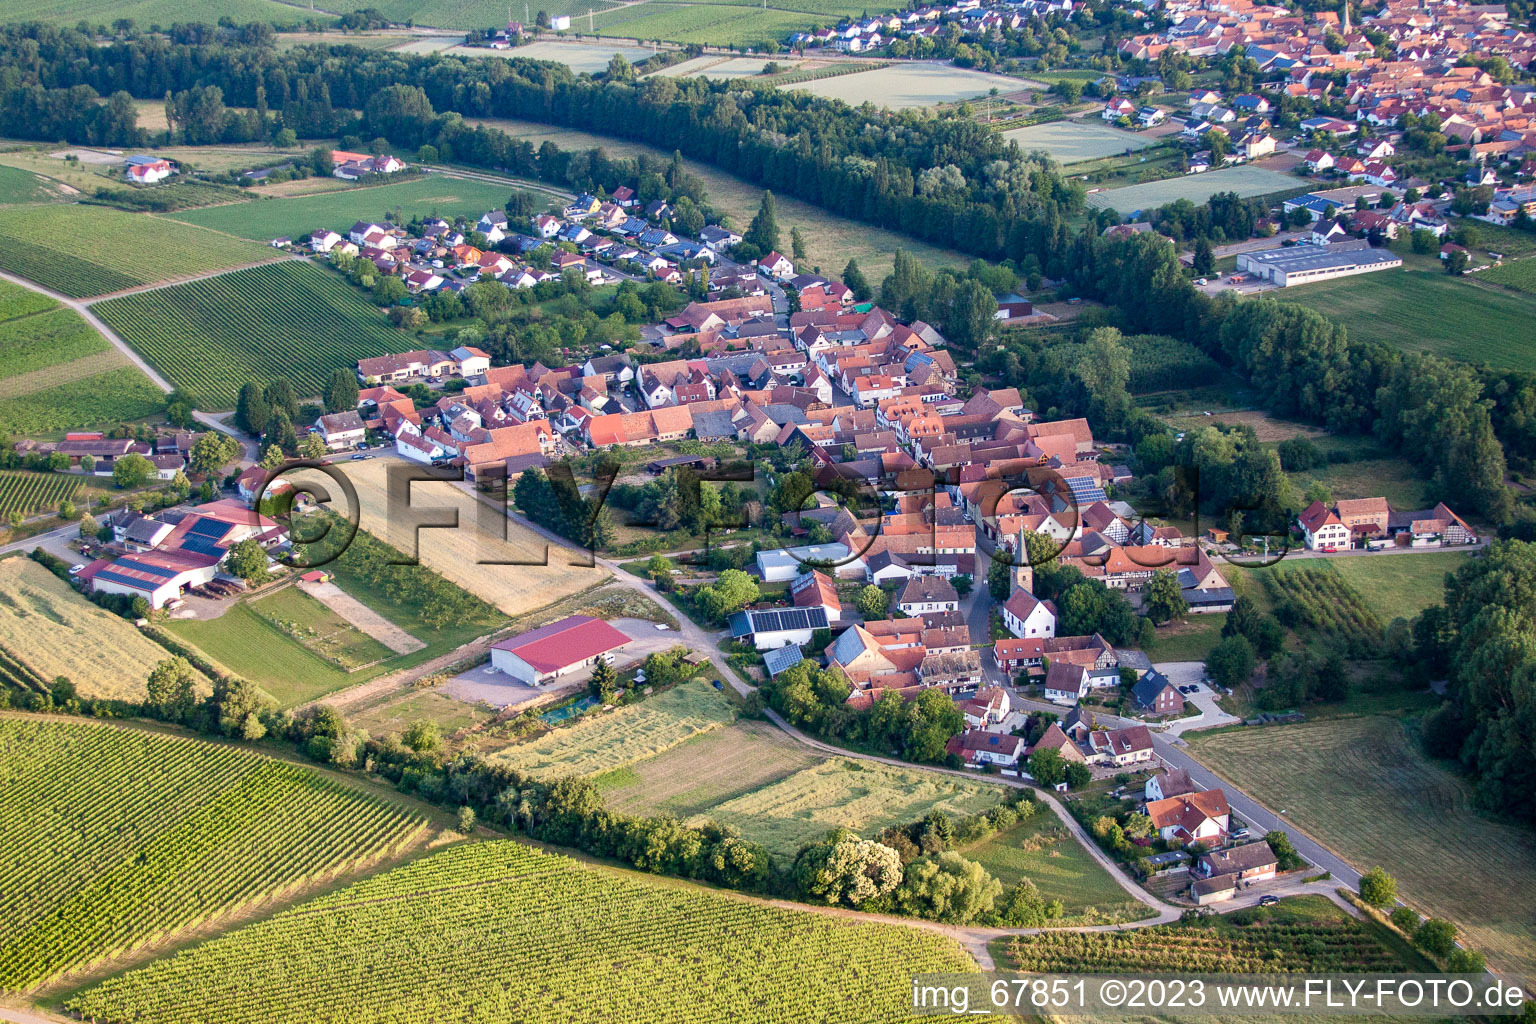 Drone recording of District Klingen in Heuchelheim-Klingen in the state Rhineland-Palatinate, Germany